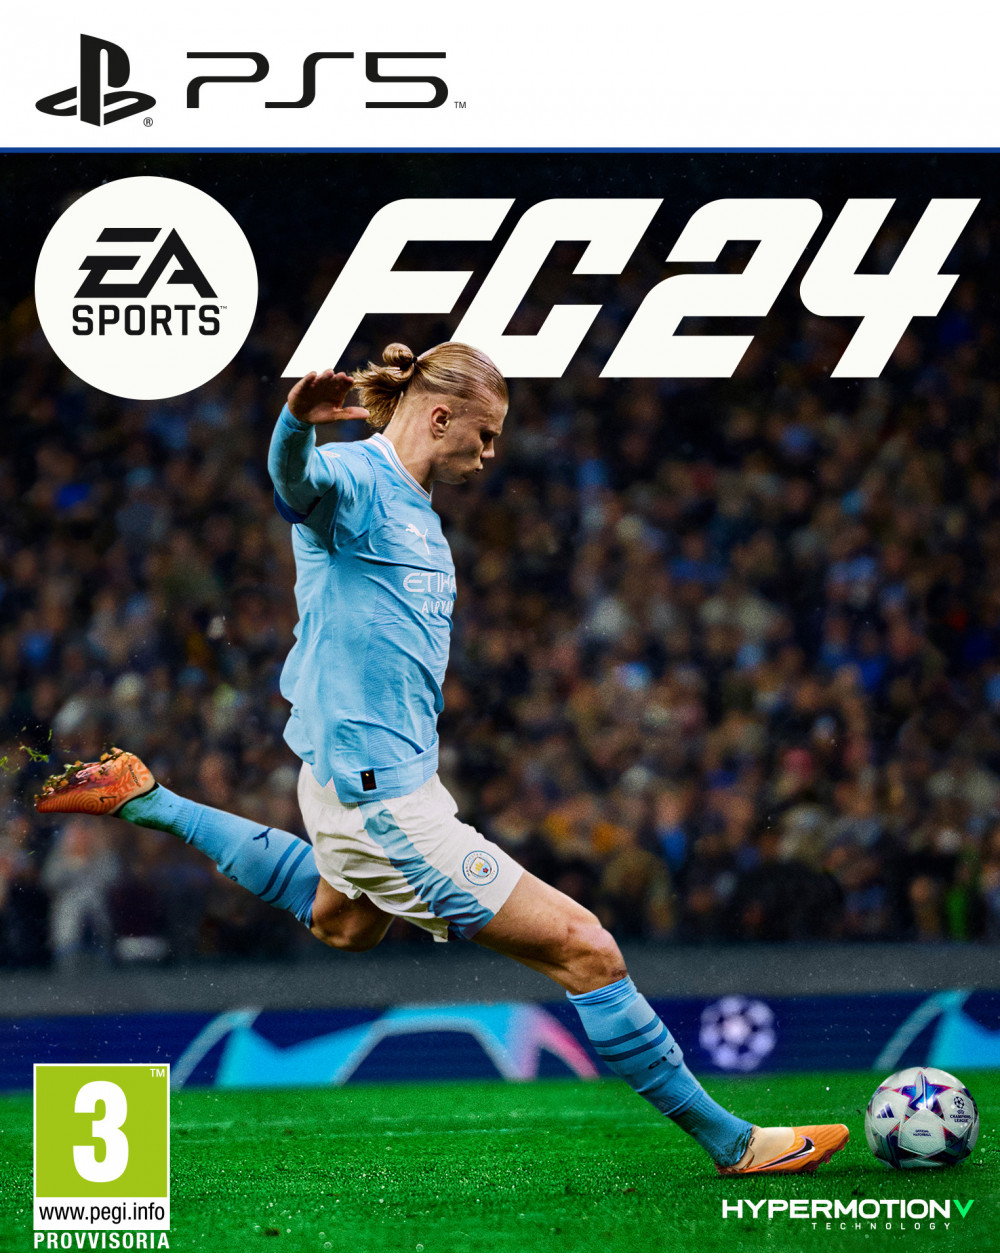 EA SPORTS FC24 (PS5) - C&C Shop